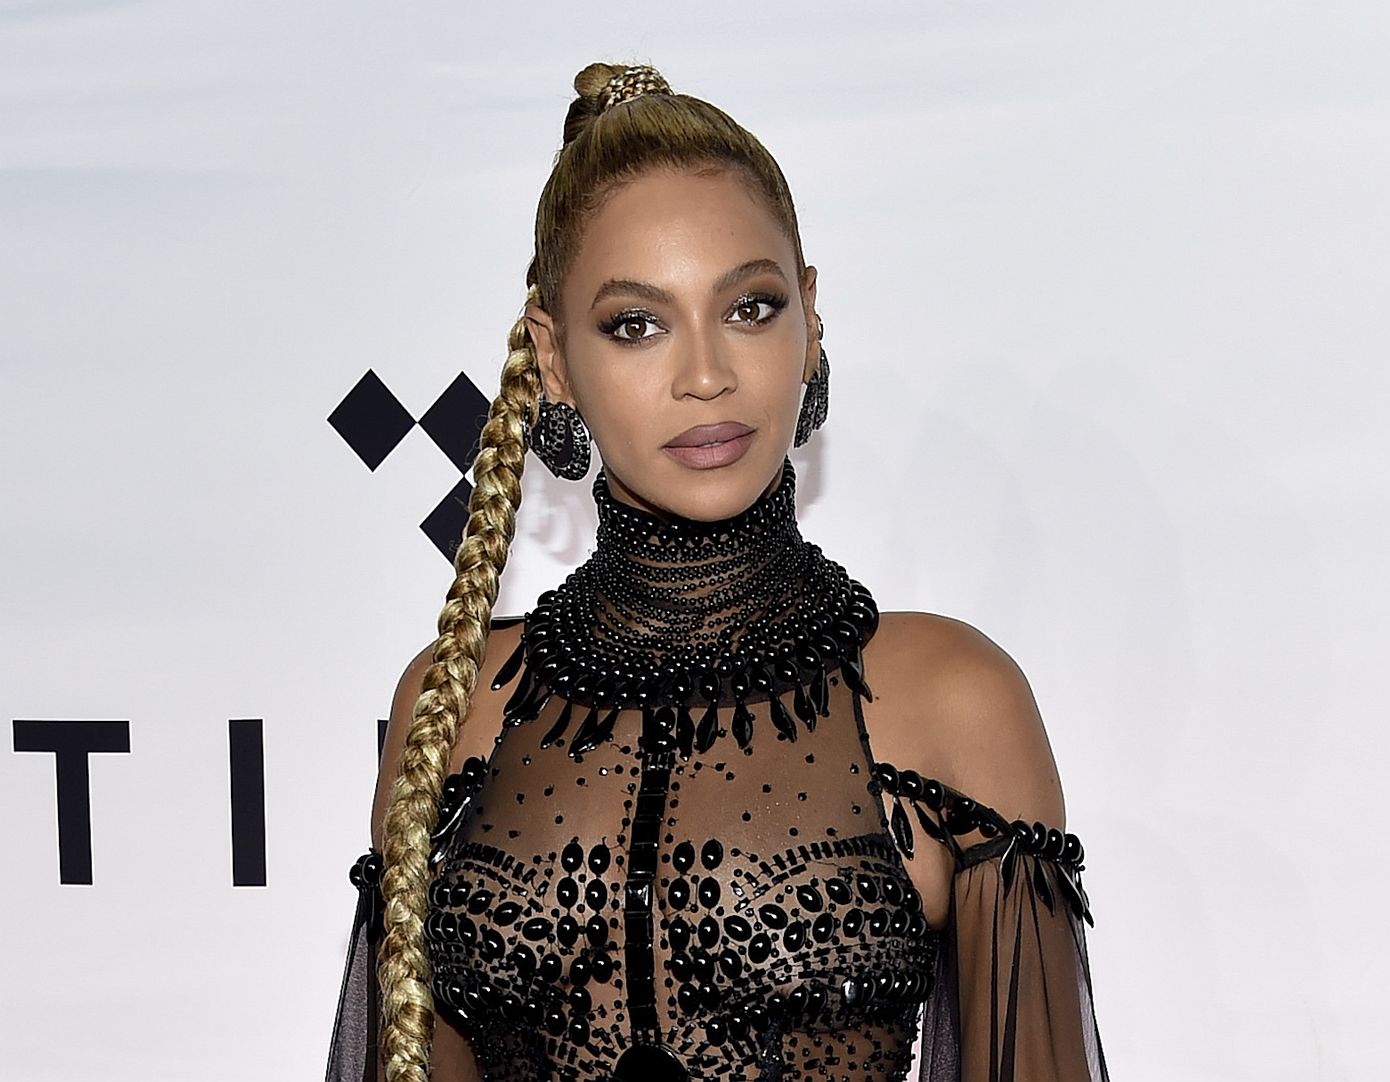 Τι έκανε η Beyoncé και απογείωσε τις πωλήσεις του Levi’s 501;